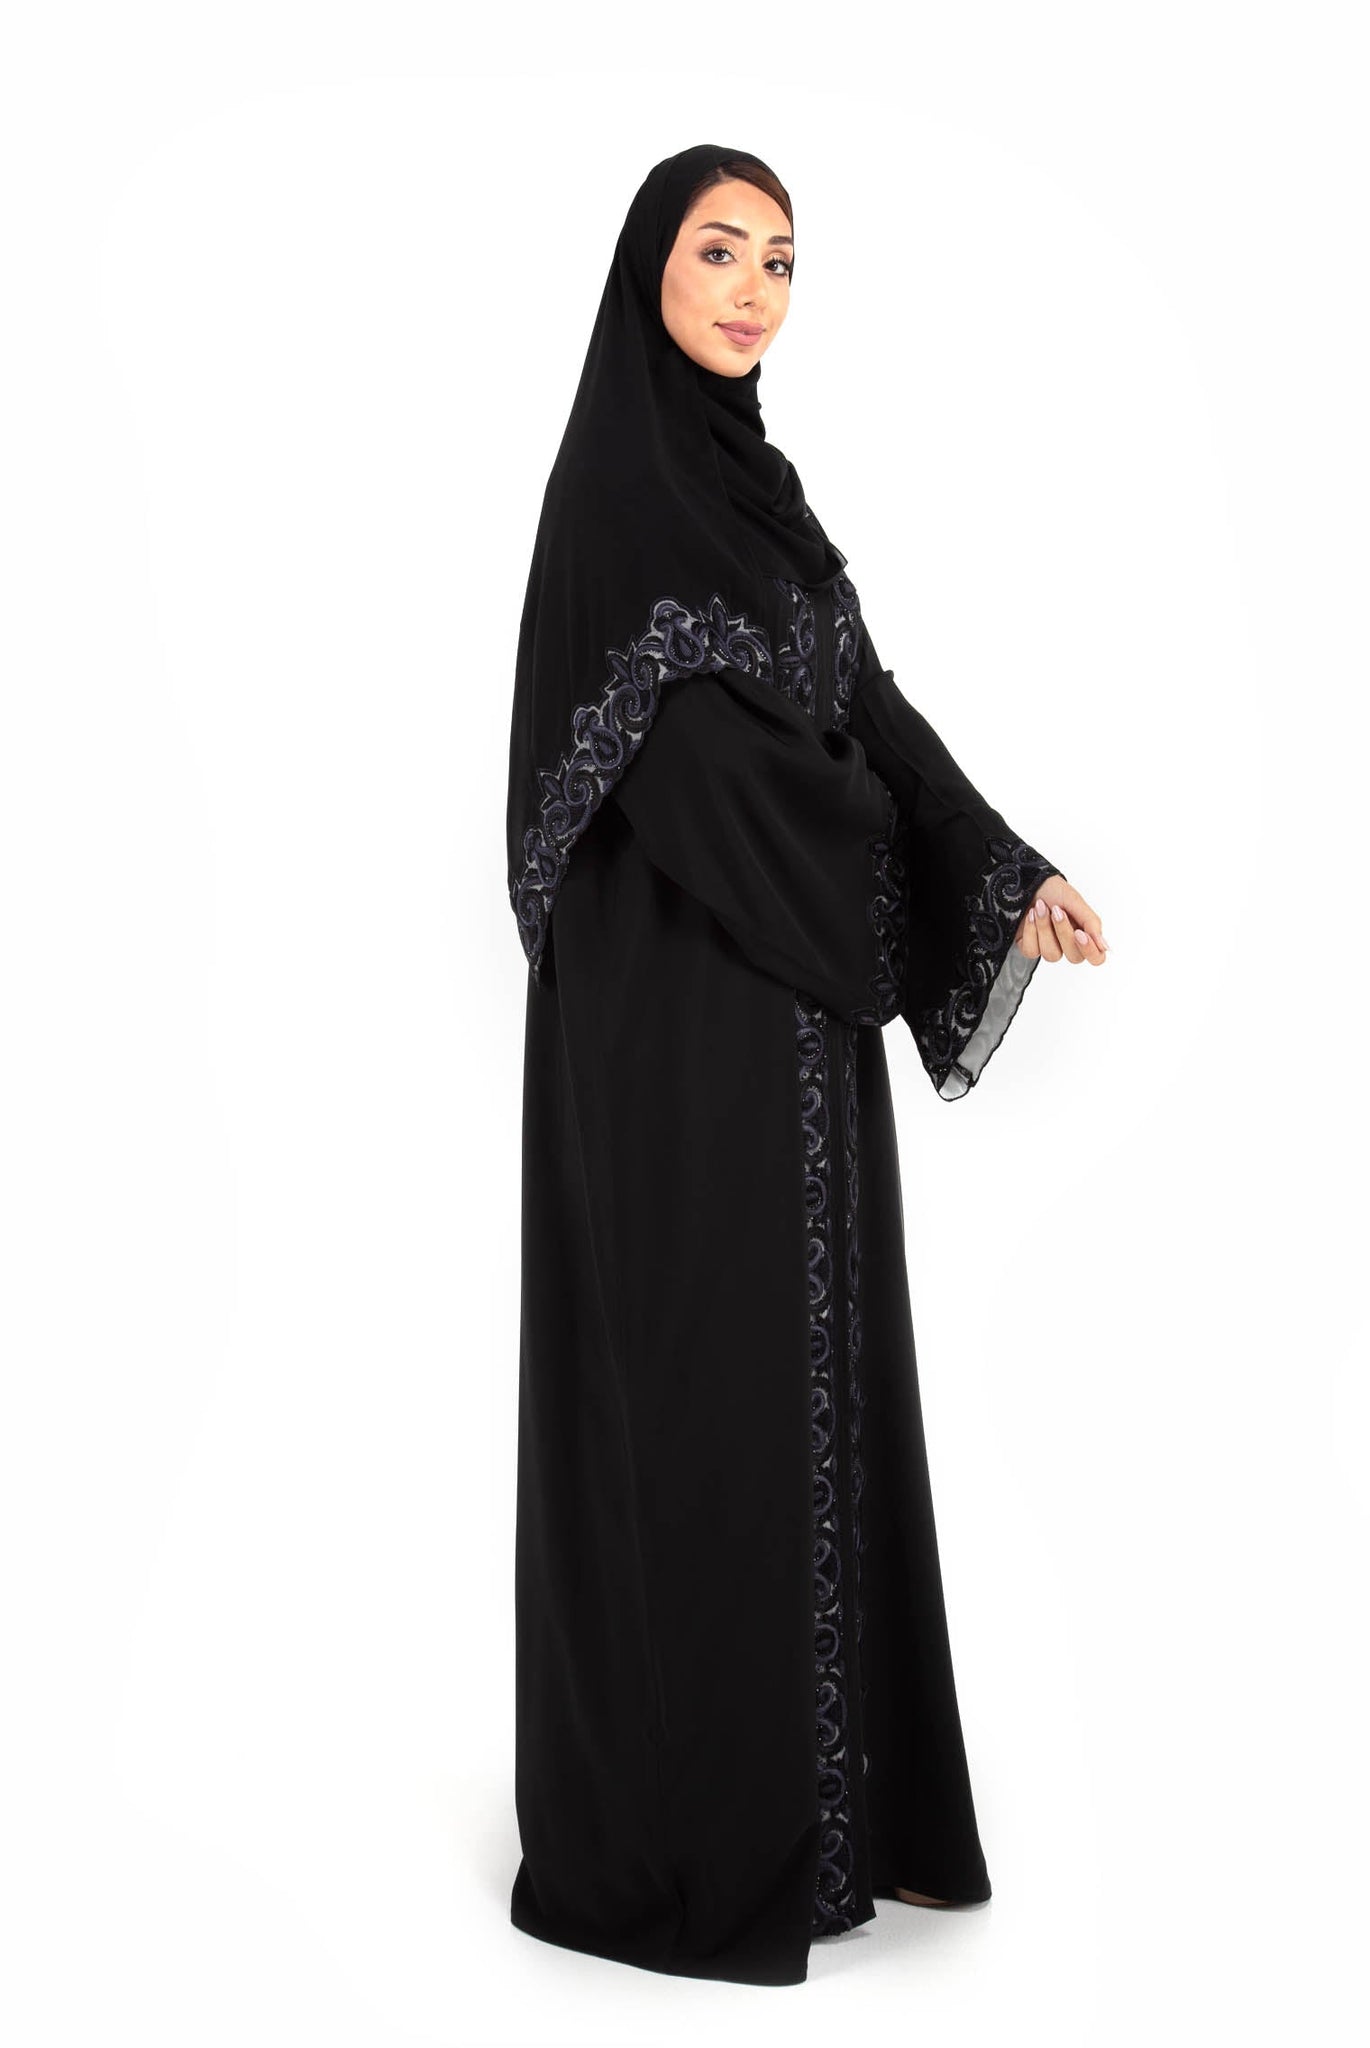 Hanayen Hand-made design in Crepe fabric Abaya